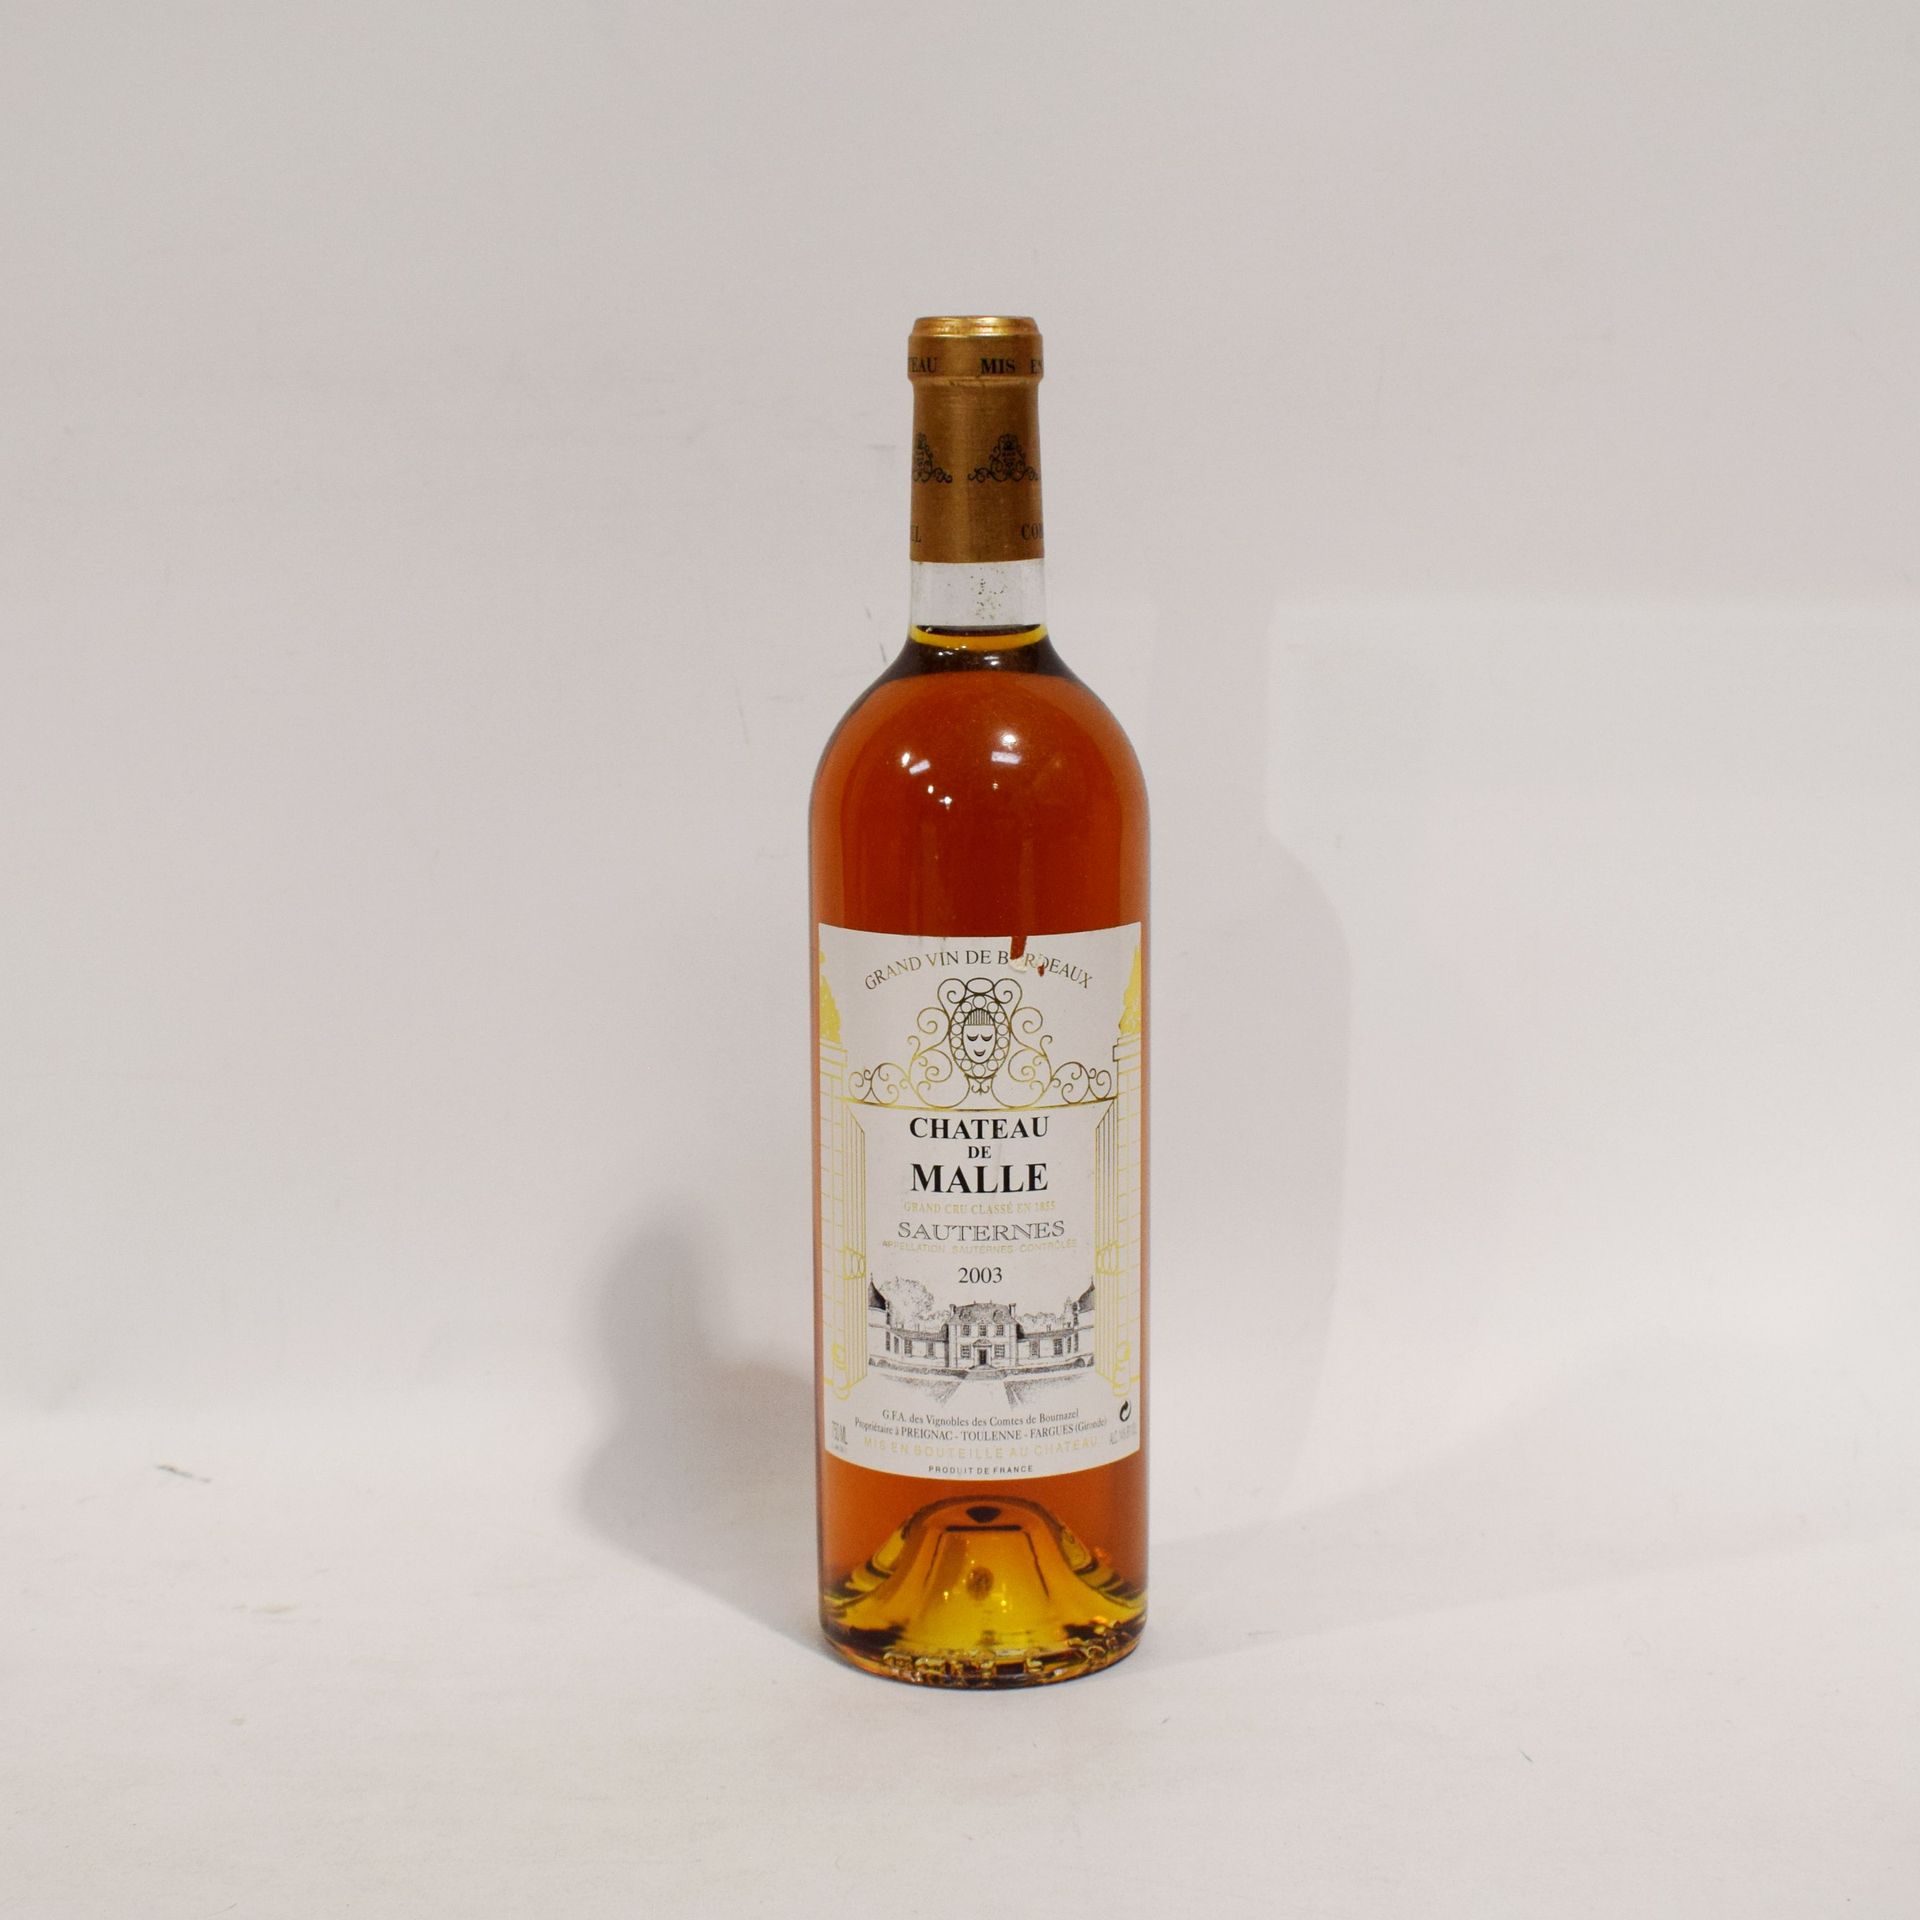 Null (SAUTERNES)一瓶Château de MALLE，Sauternes产区的Grand Cru Classé，2003年份，良好水平